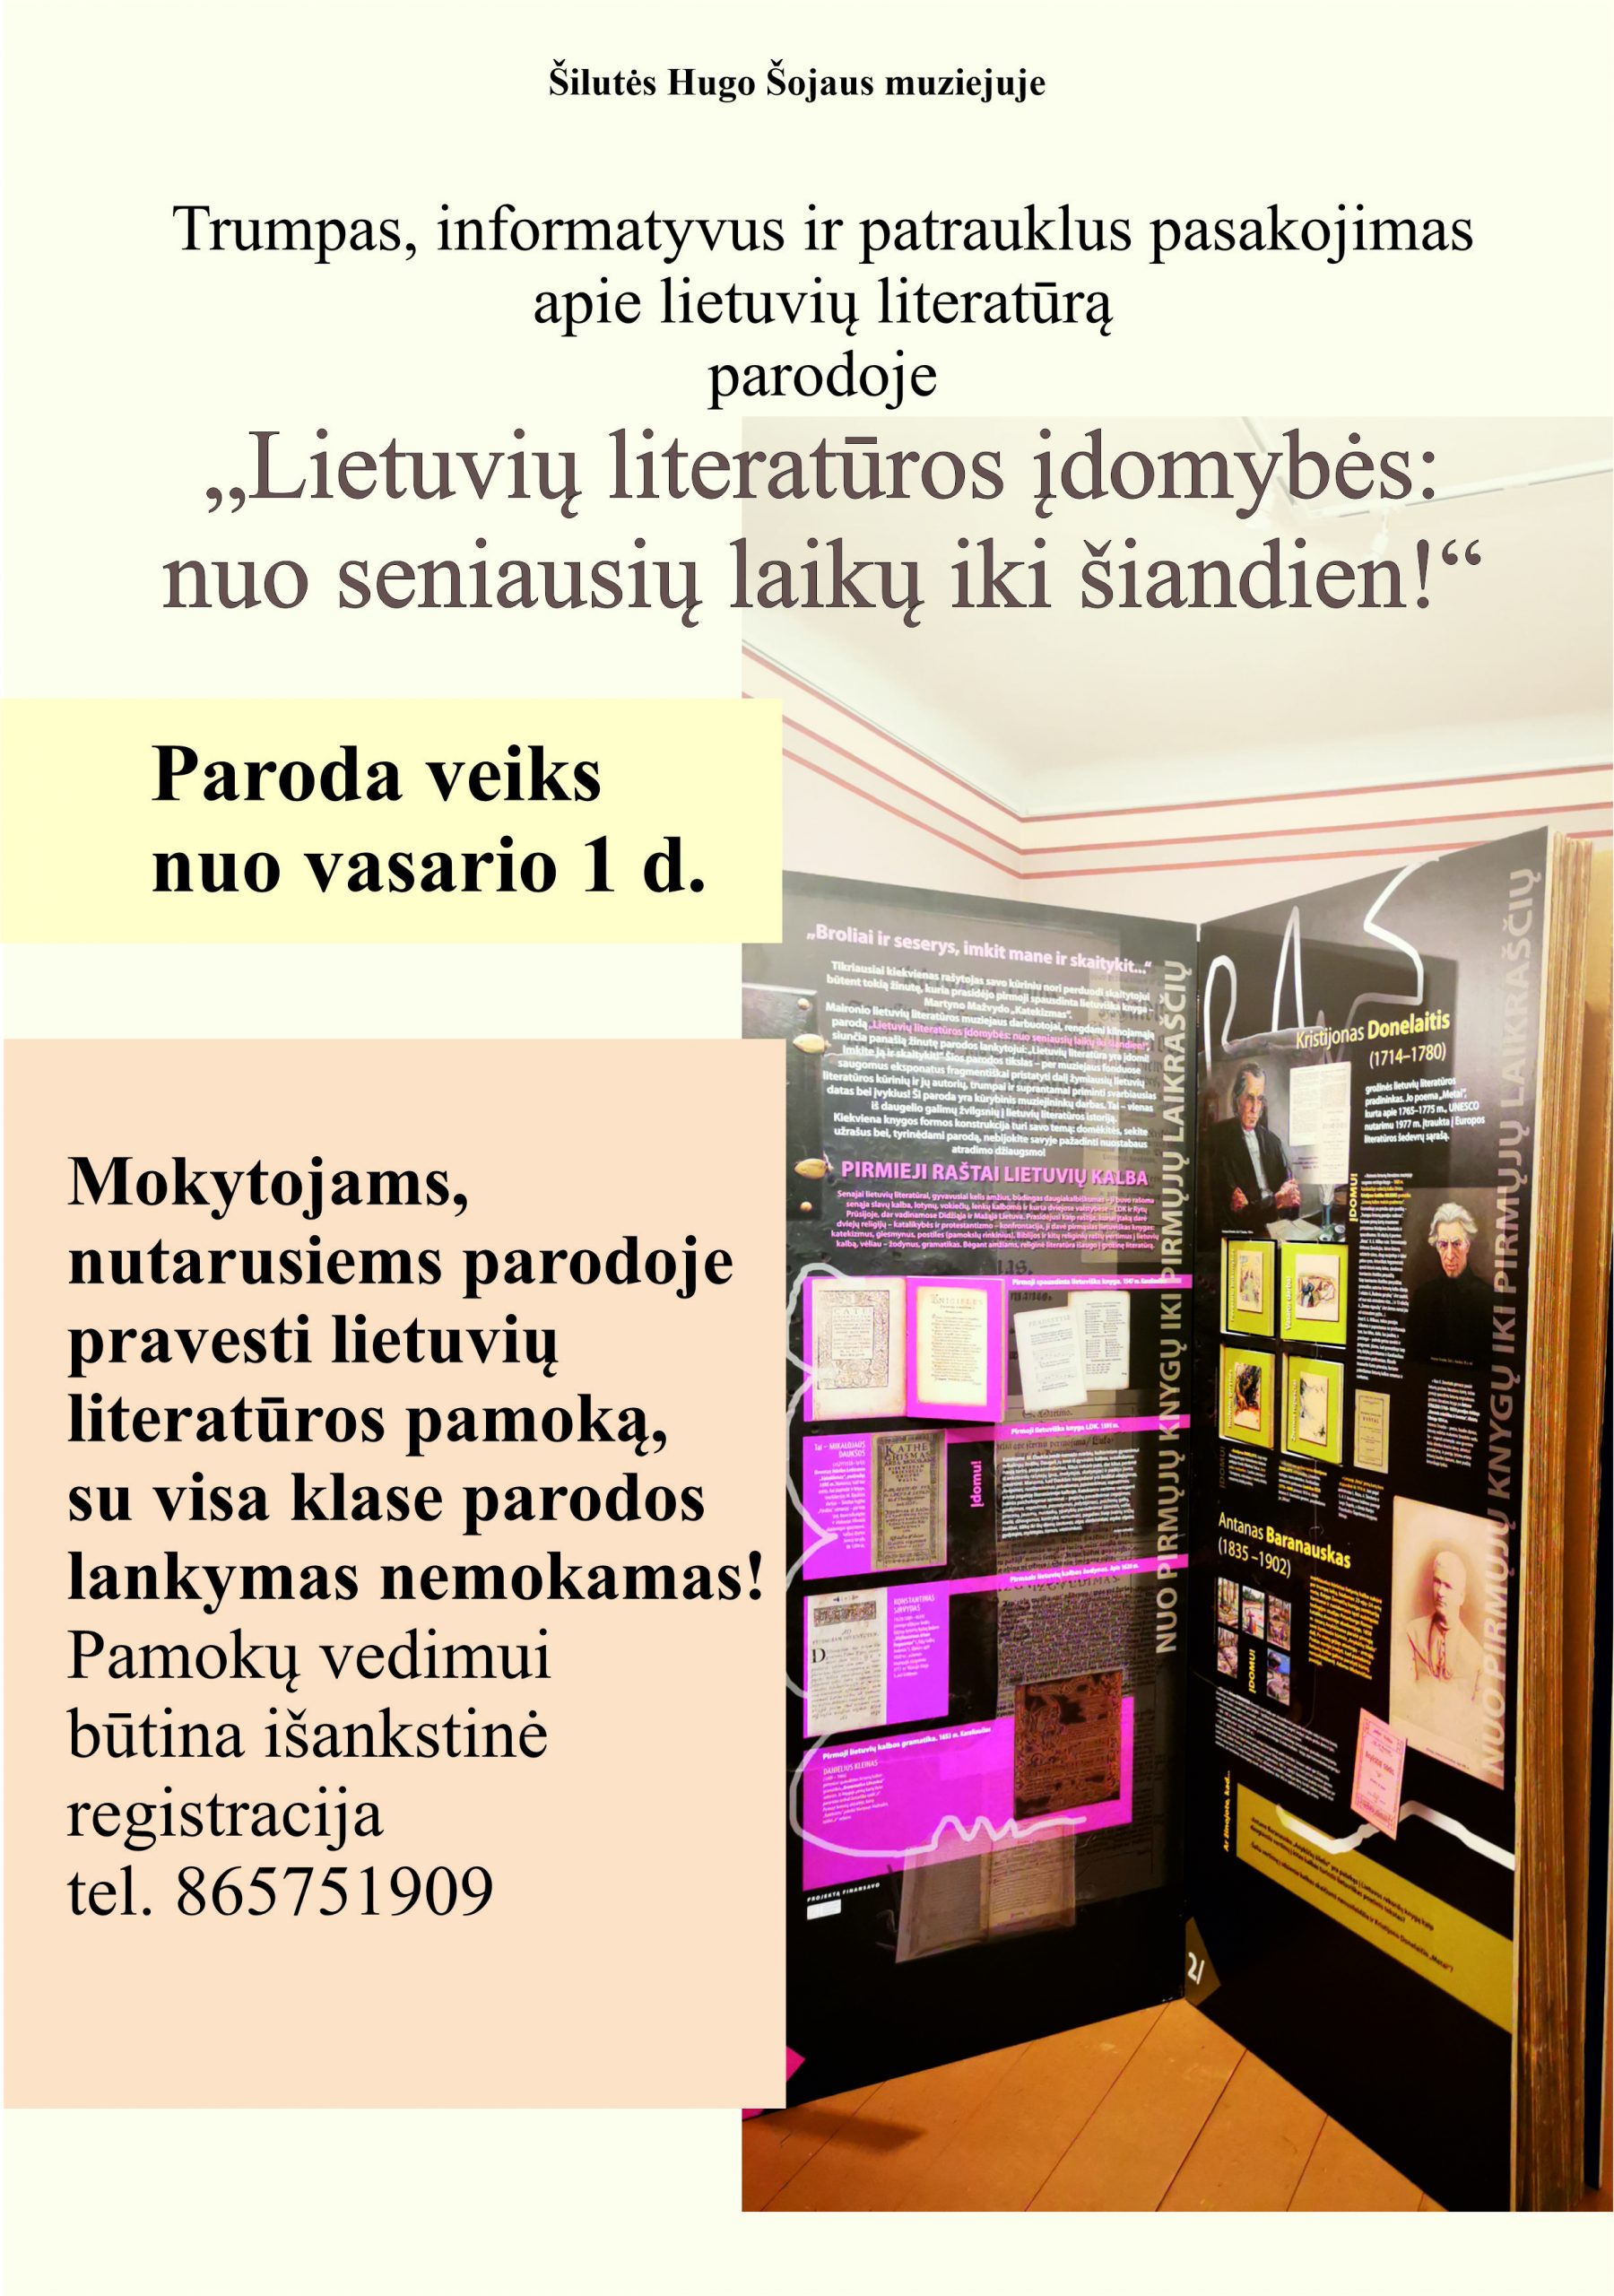 Nuo š. m. vasario 1 d. muziejuje NAUJA PARODA „Lietuvių literatūros įdomybės: nuo seniausių laikų iki šiandien!“